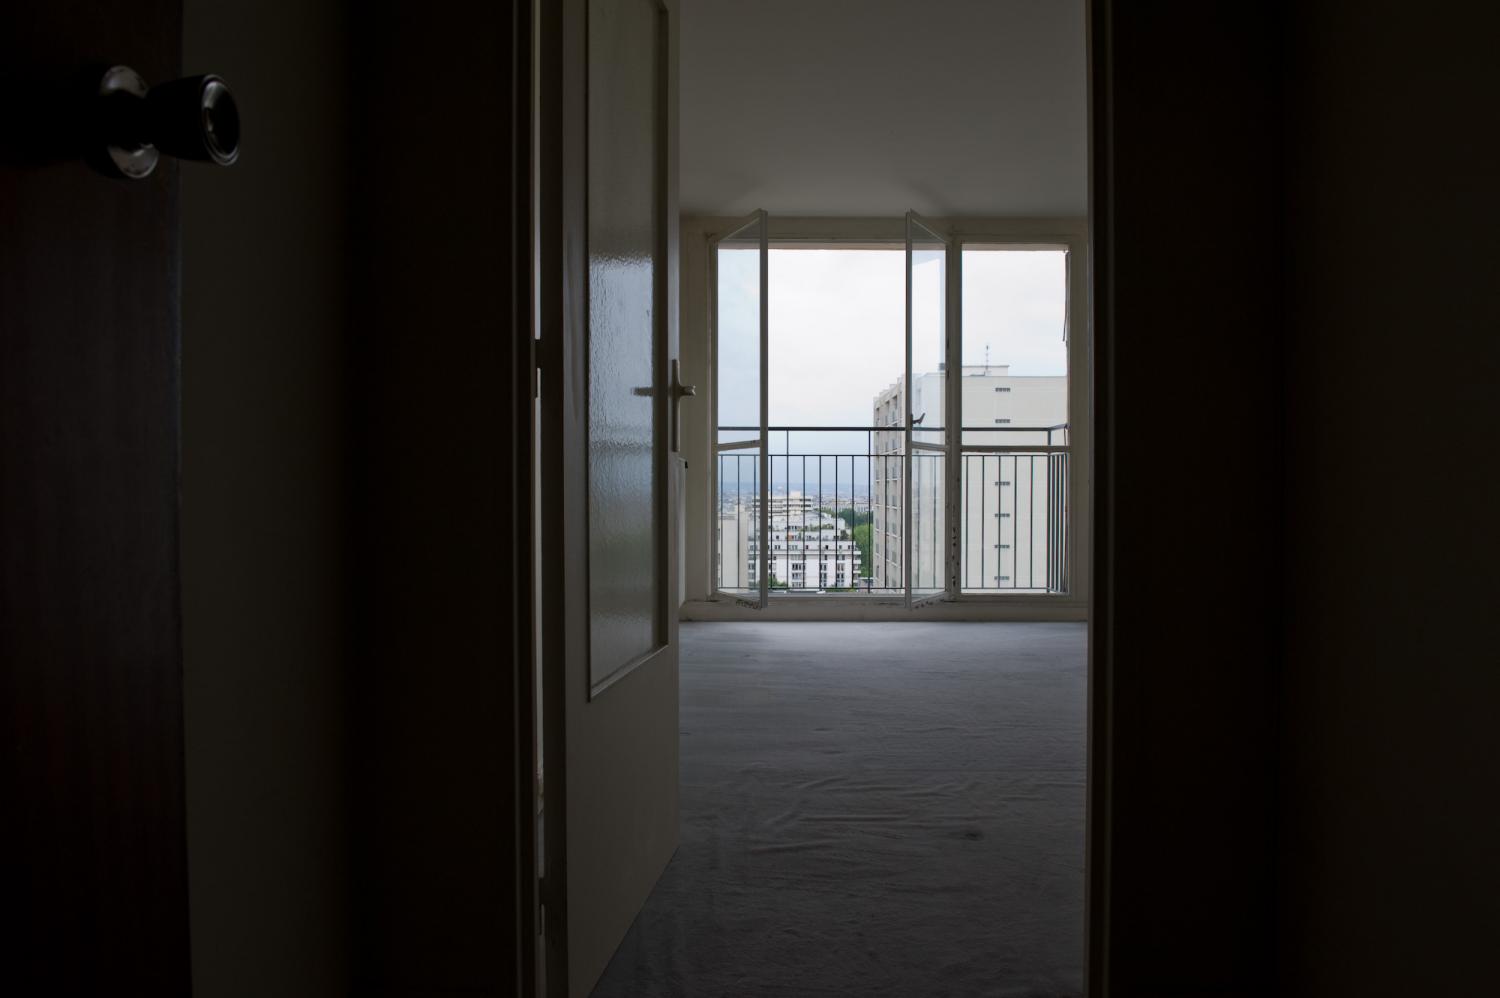 Mon appartement vide avant l'état des lieux : une porte vitrée ouverte, une grande pièce avec de la moquette, la baie vitrée, le balcon, la vue. Paris, août 2011.